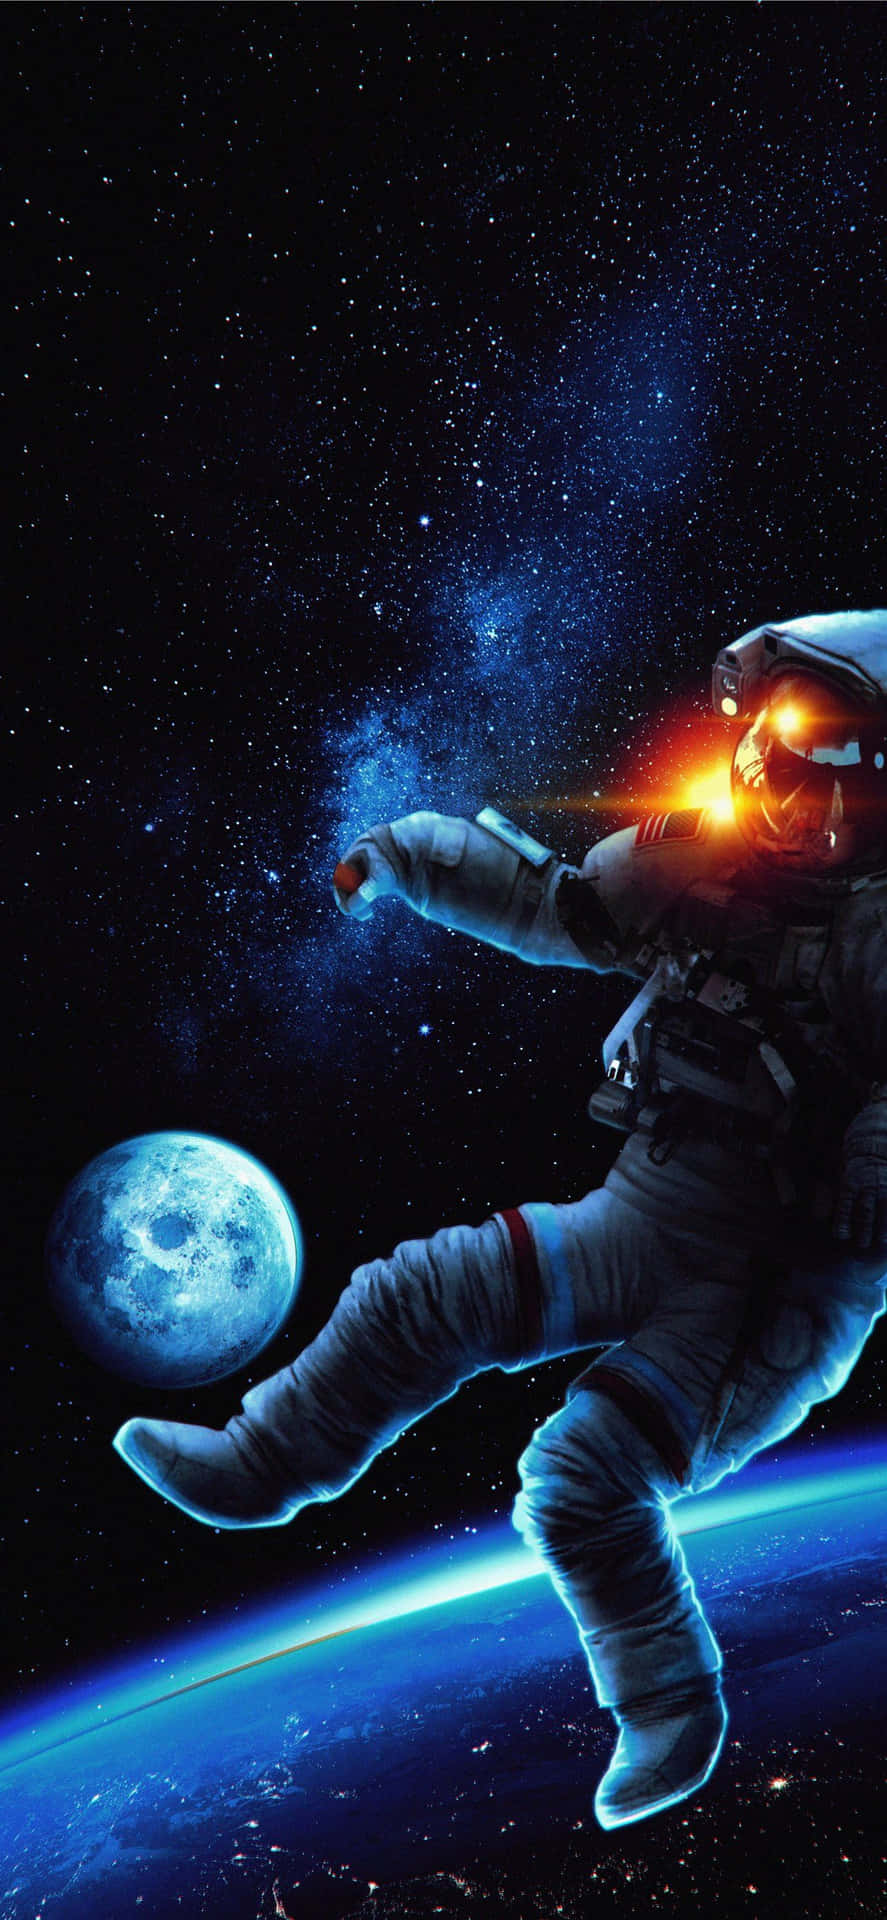 Lua E Terra Com Astronauta Papel De Parede Para Iphone. Papel de Parede